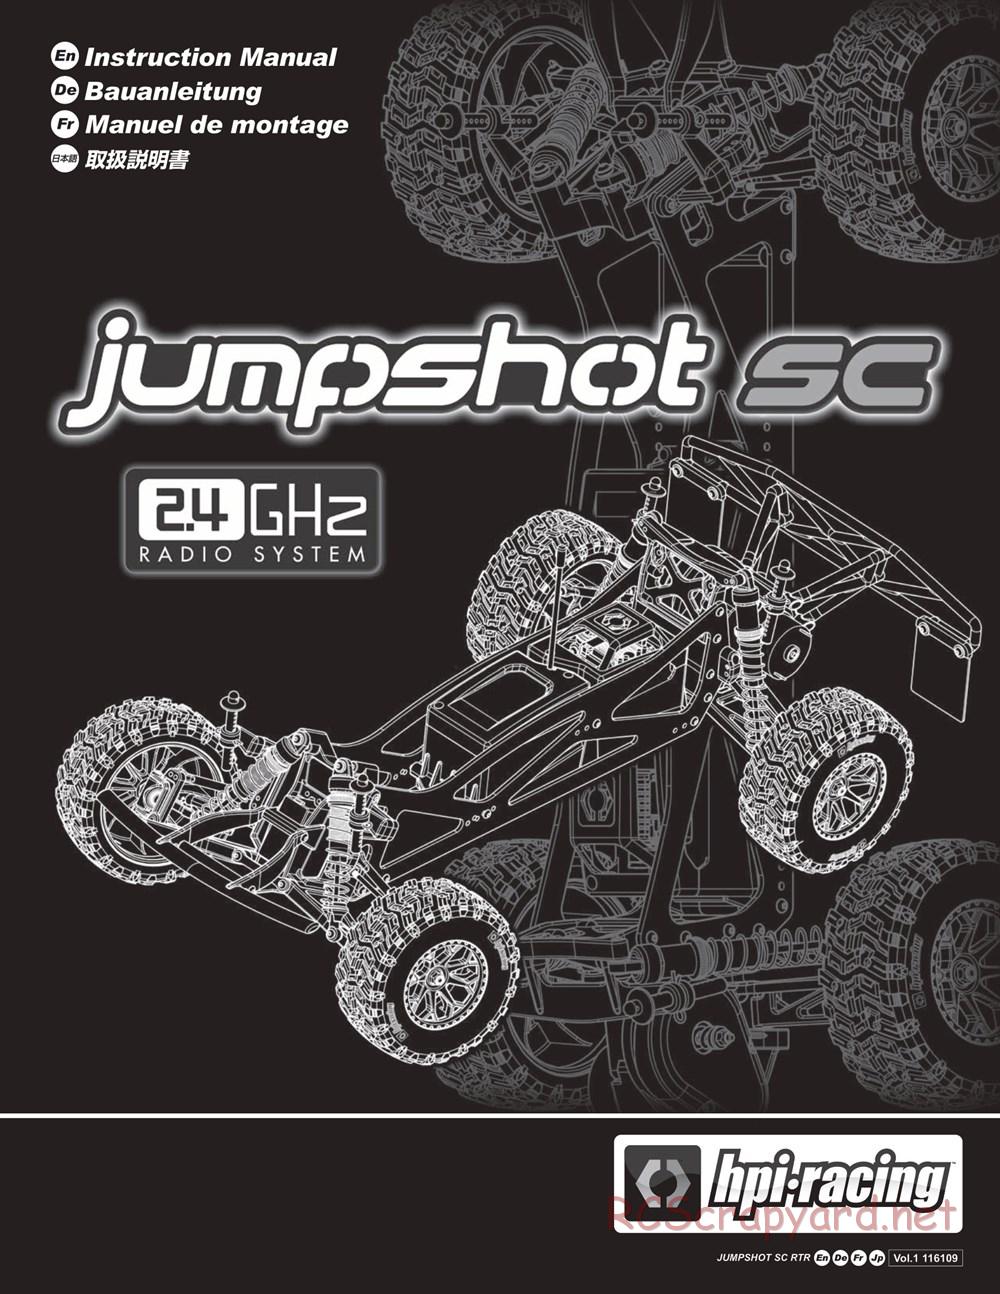 HPI - Jumpshot SC - Manual - Page 1